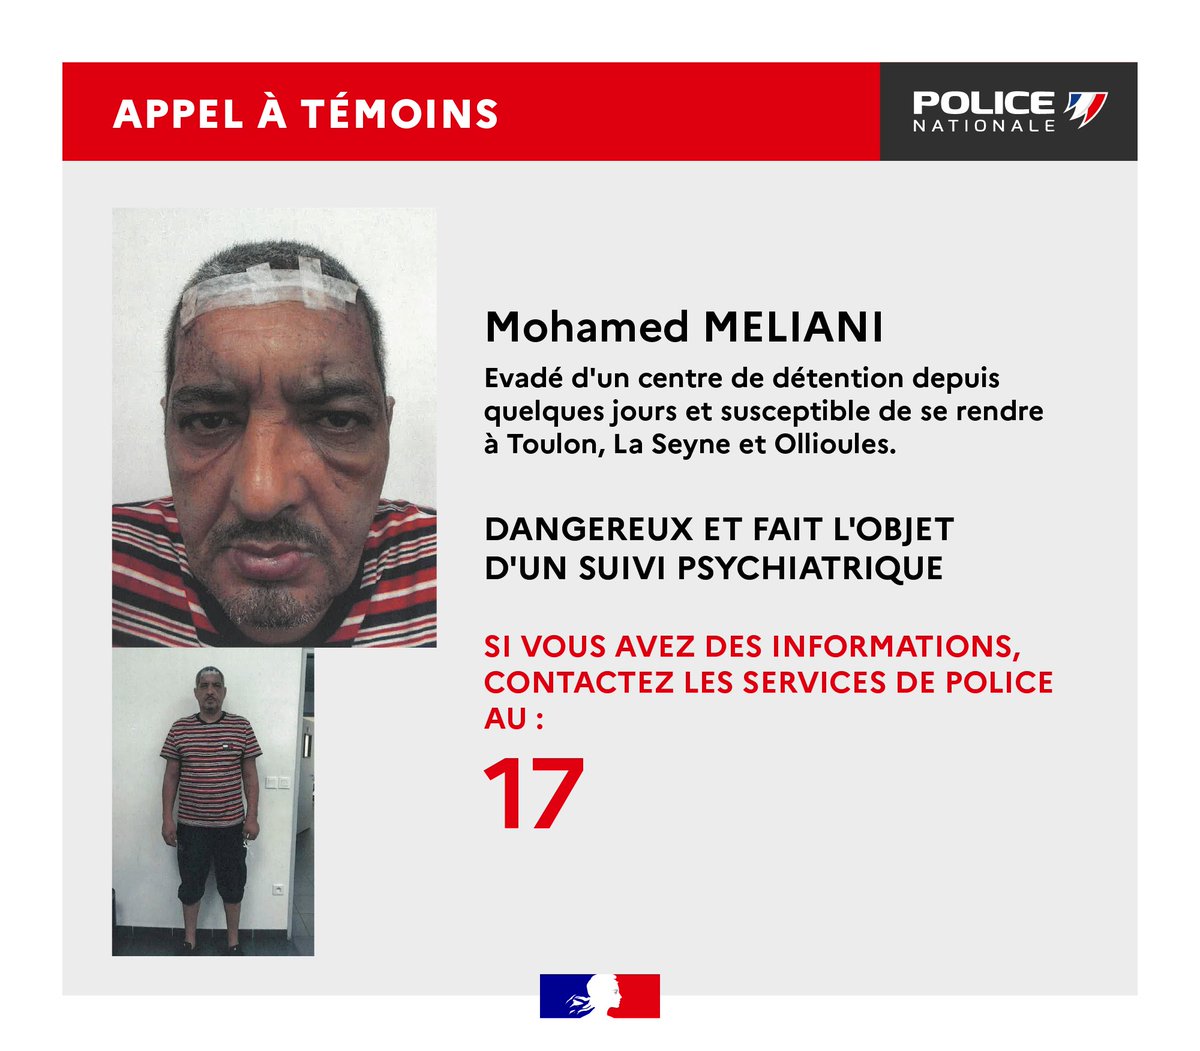 🇫🇷 APPEL À TÉMOINS : la police du #Var tente de retrouver un homme qui s'est évadé d'un centre de détention. L’homme est 'dangereux' et 'fait l'objet d'un suivi psychiatrique'. Il est susceptible de se rendre à #Toulon, La Seyne-sur-Mer et Ollioules. #AppelÀTémoins